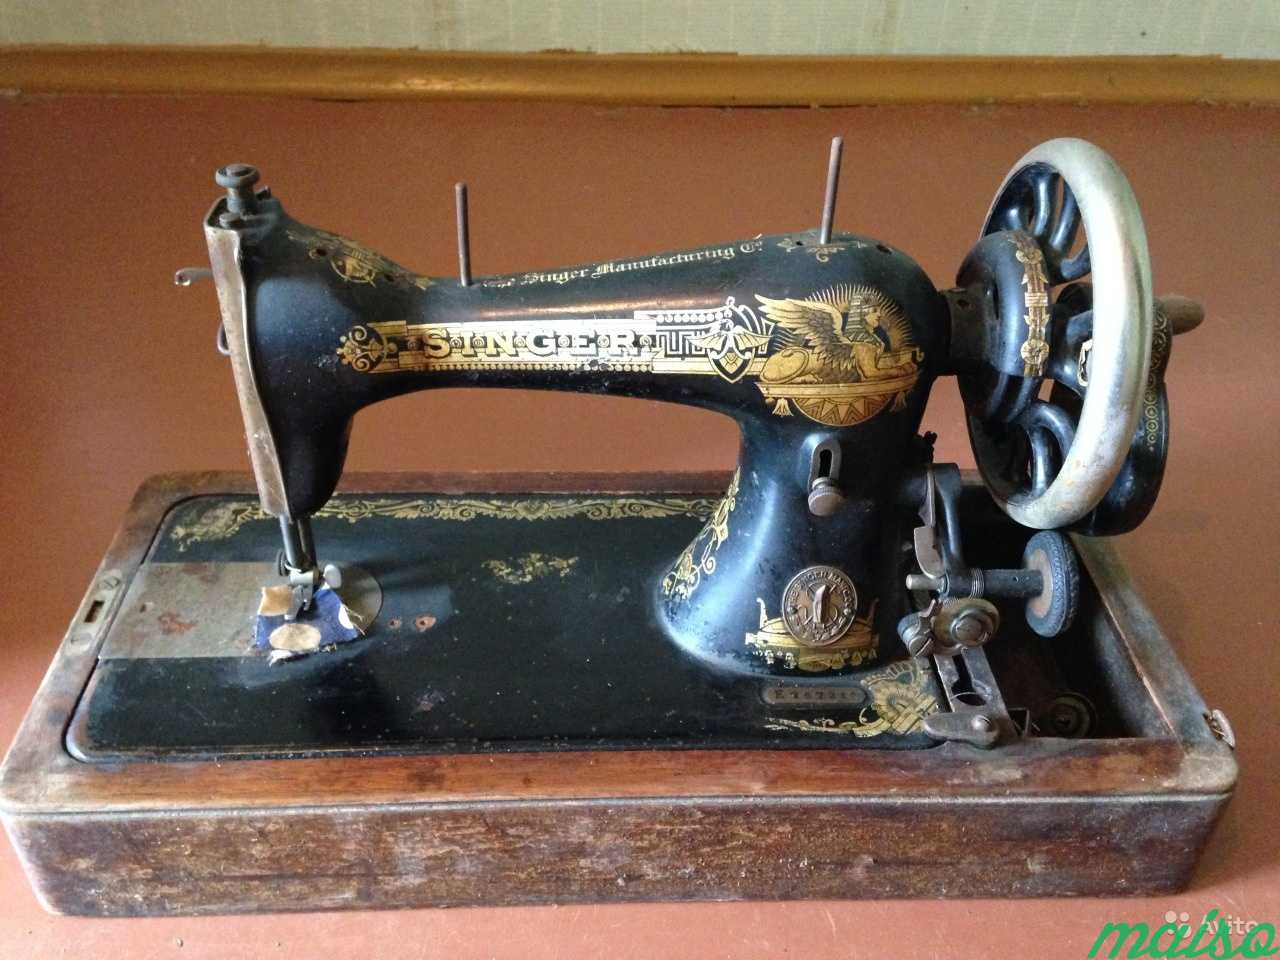 Год выпуска швейной машинки зингер. Зингер 1908. Зингер швейная машинка 1908. Швейная машинка Зингер 1908 года. Singer швейная машинка 1908 года.